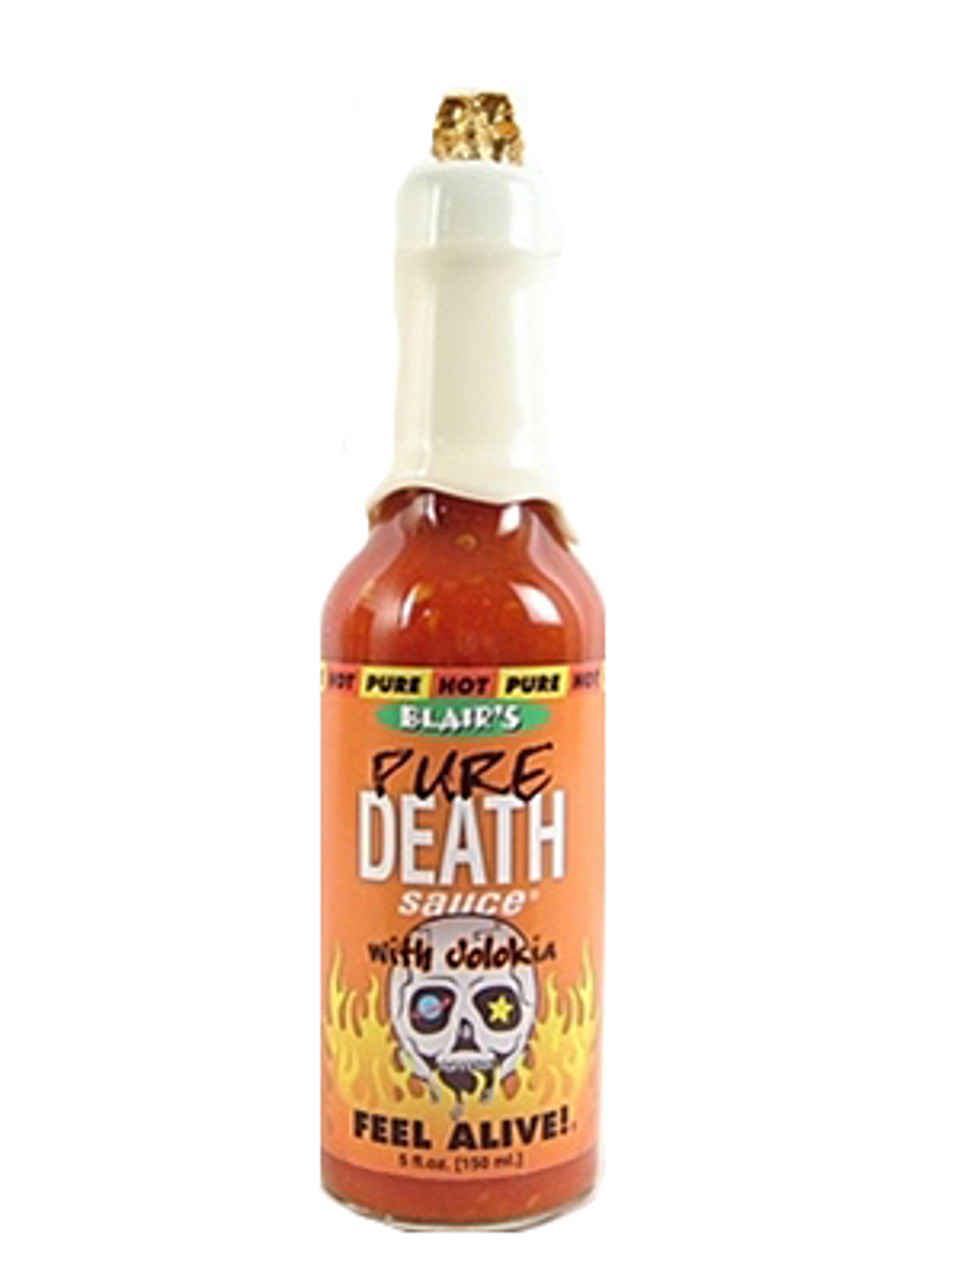 Louisiana Gold Pepper Sauce - Hot Sauce Review - HotSauceDaily